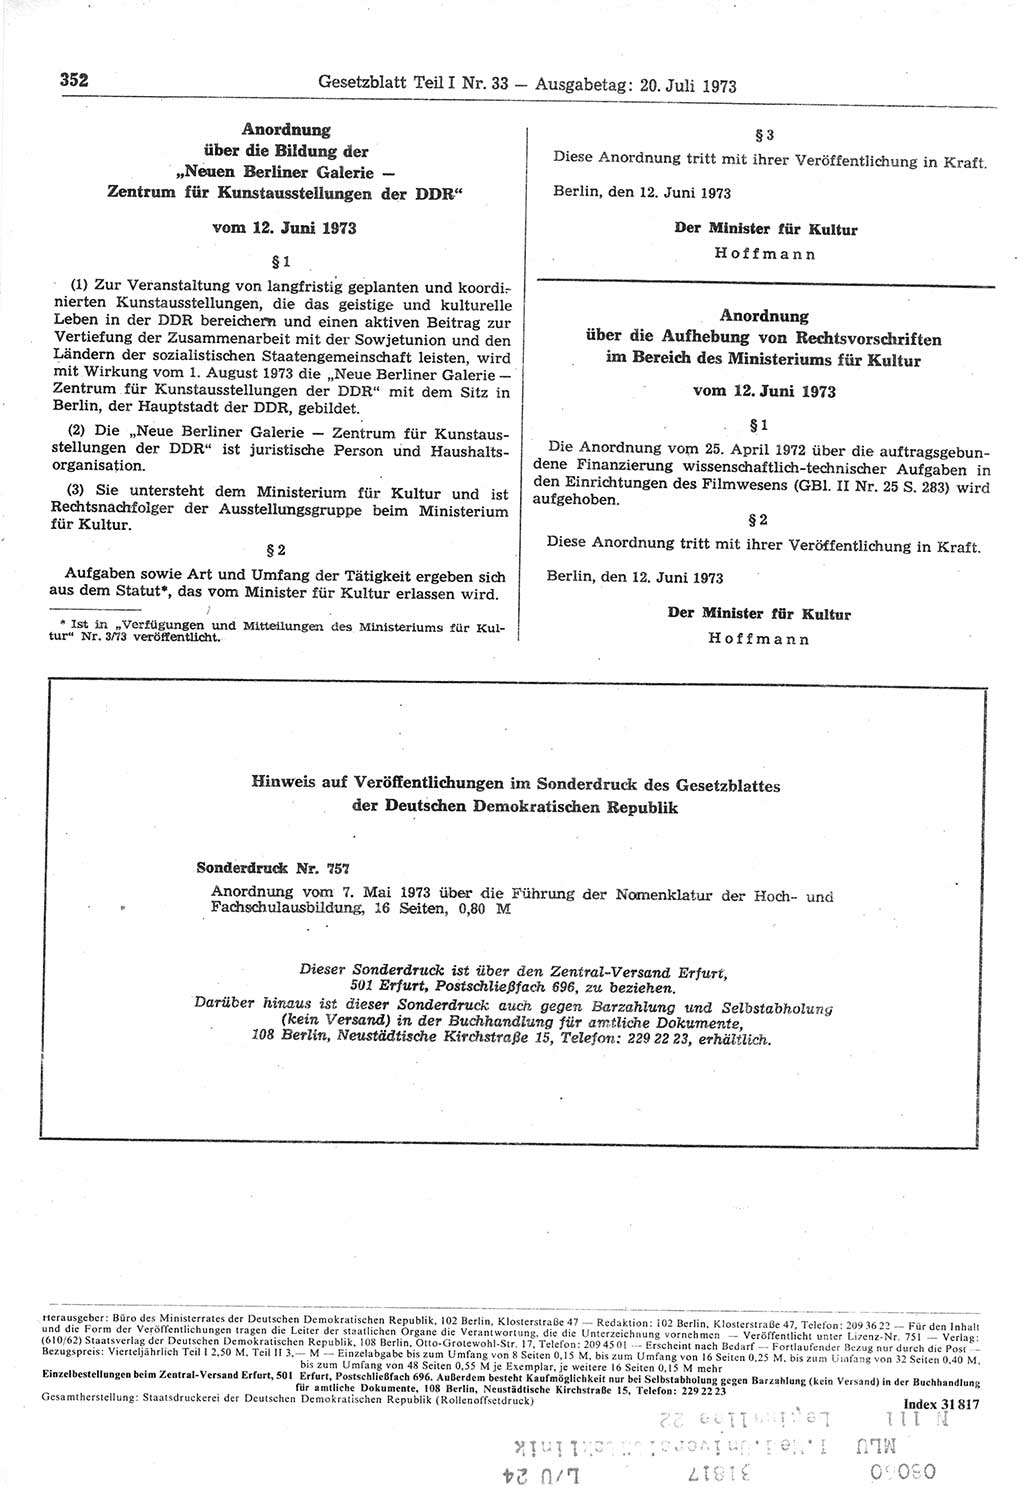 Gesetzblatt (GBl.) der Deutschen Demokratischen Republik (DDR) Teil Ⅰ 1973, Seite 352 (GBl. DDR Ⅰ 1973, S. 352)